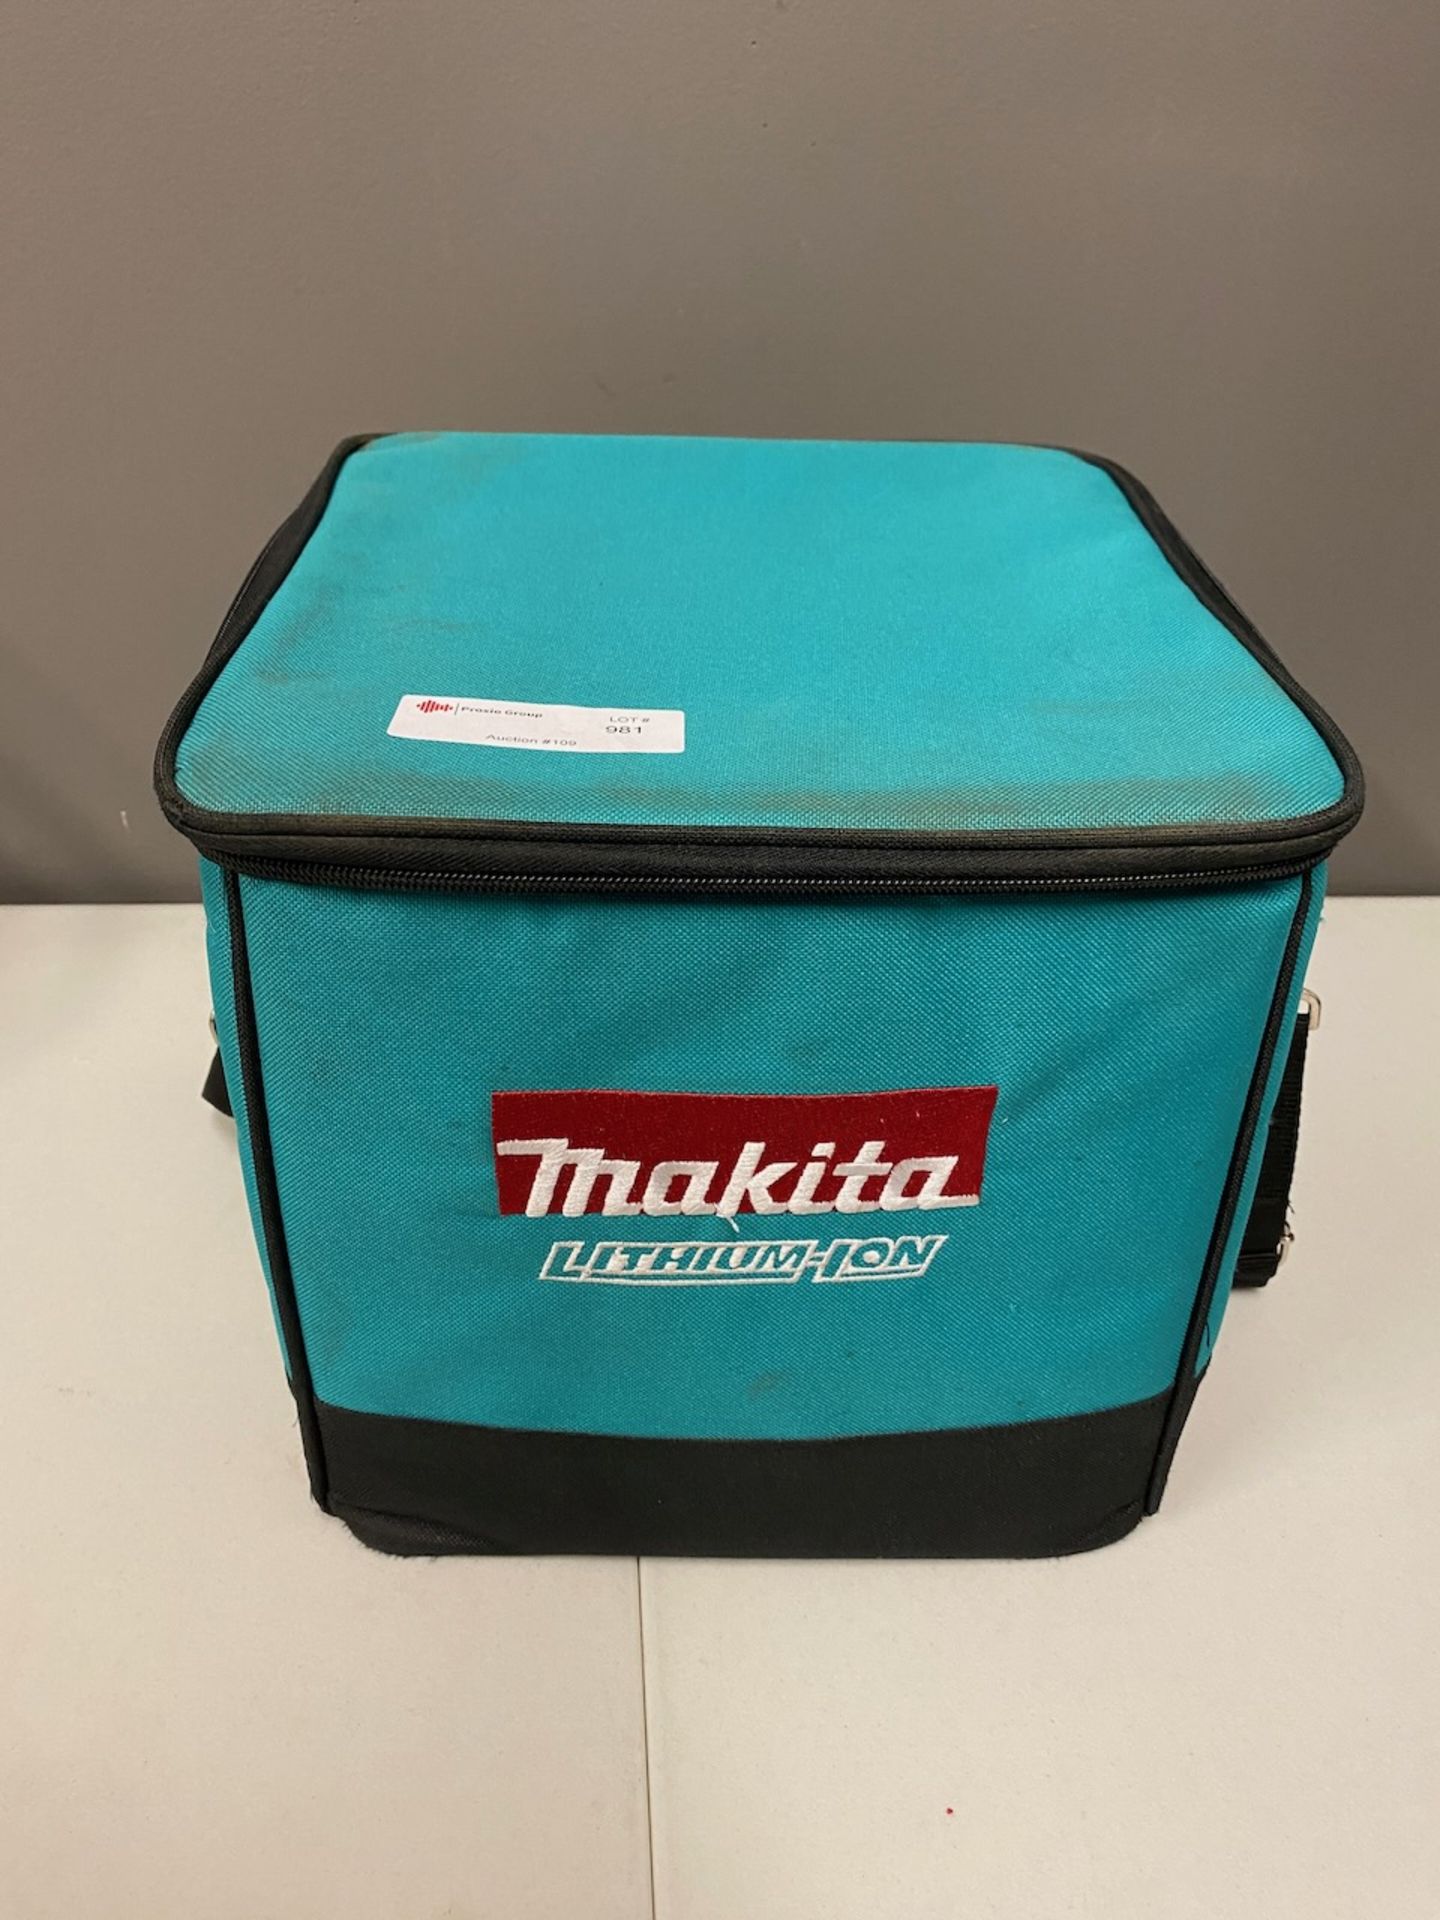 Makita lithium ion tool kit